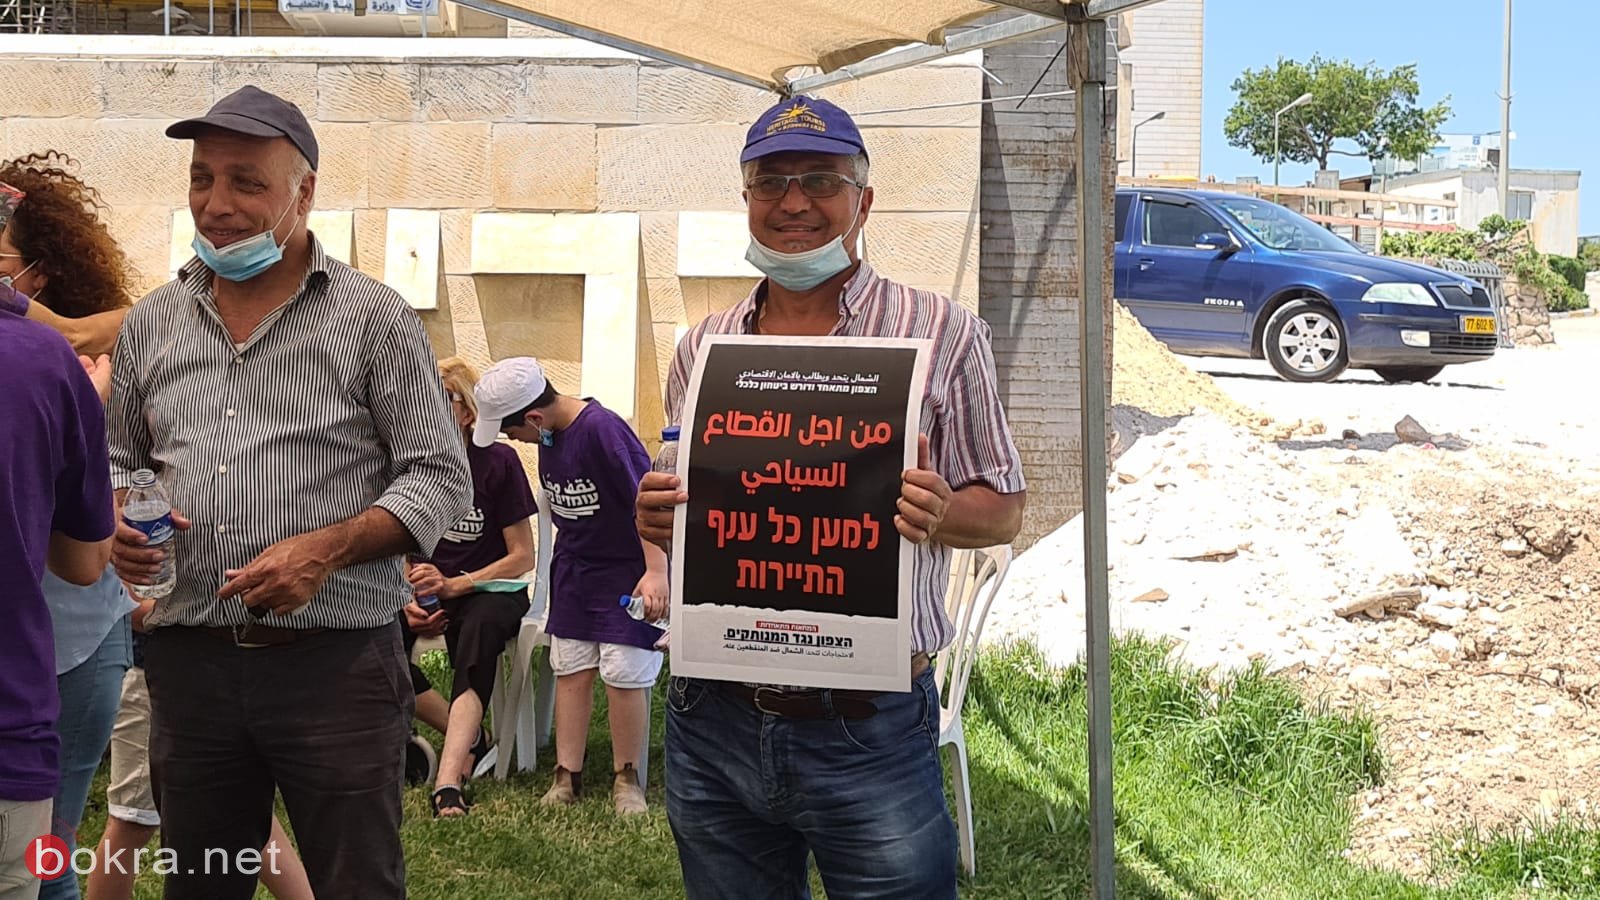 الناصرة: متظاهرون يطالبون بالأمان الاقتصادي بسبب التمييز بالميزانيات-8